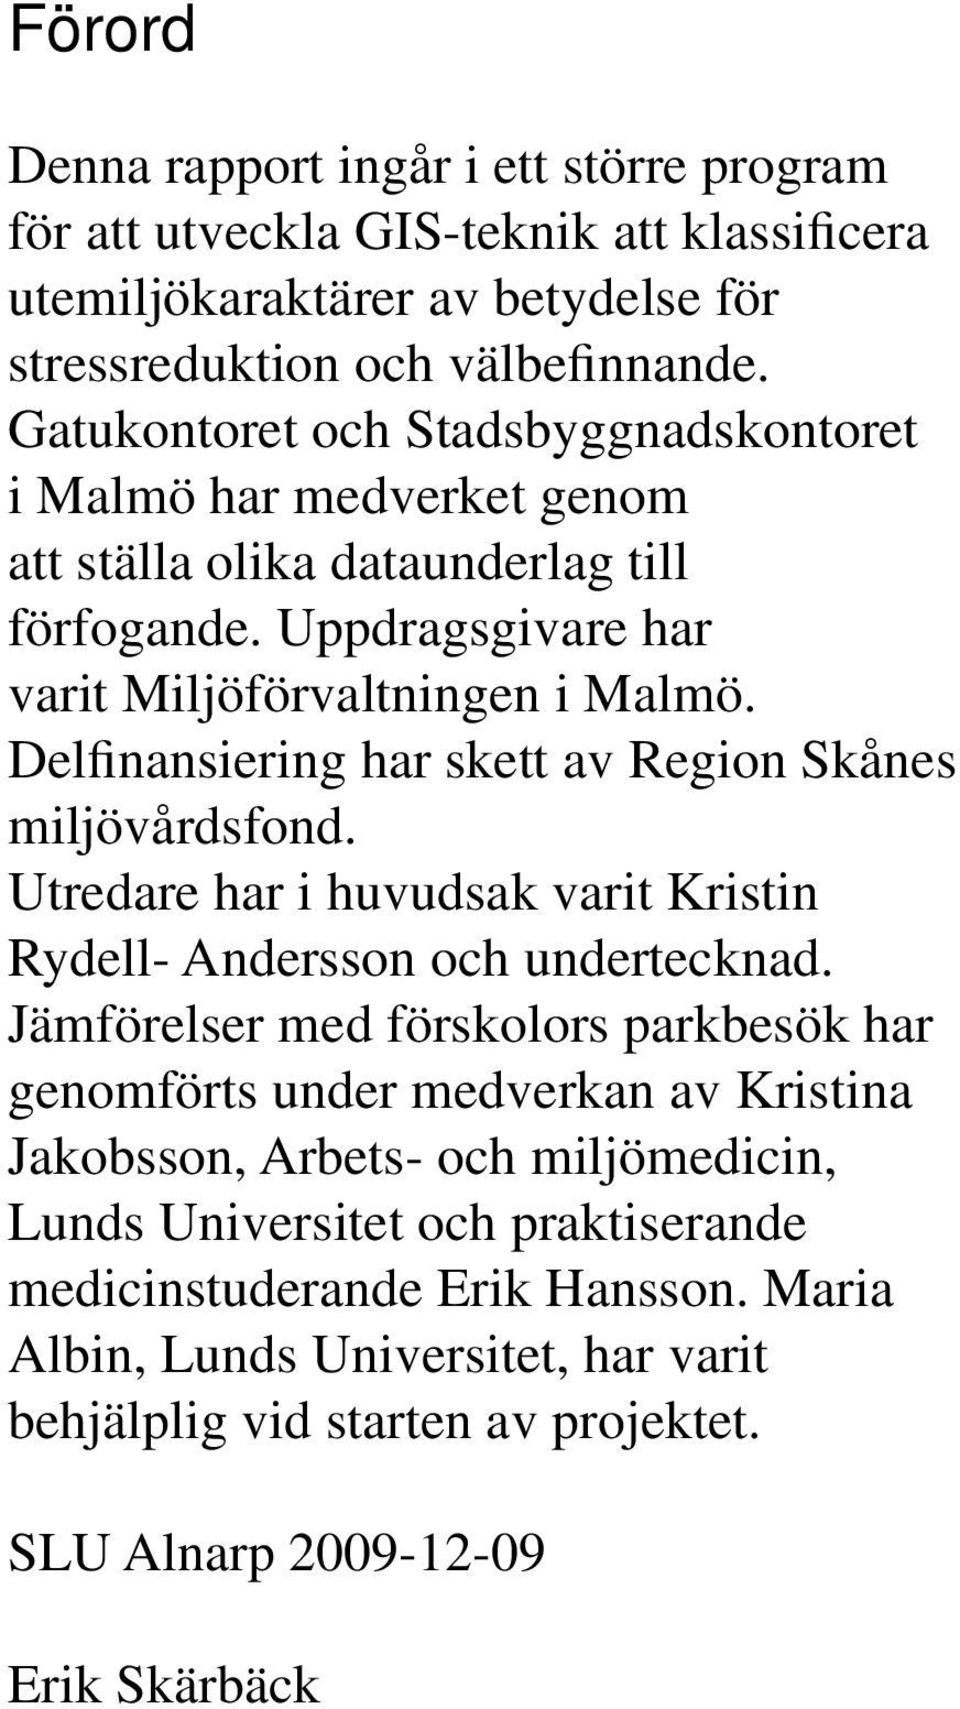 Delfinansiering har skett av Region Skånes miljövårdsfond. Utredare har i huvudsak varit Kristin Rydell- Andersson och undertecknad.